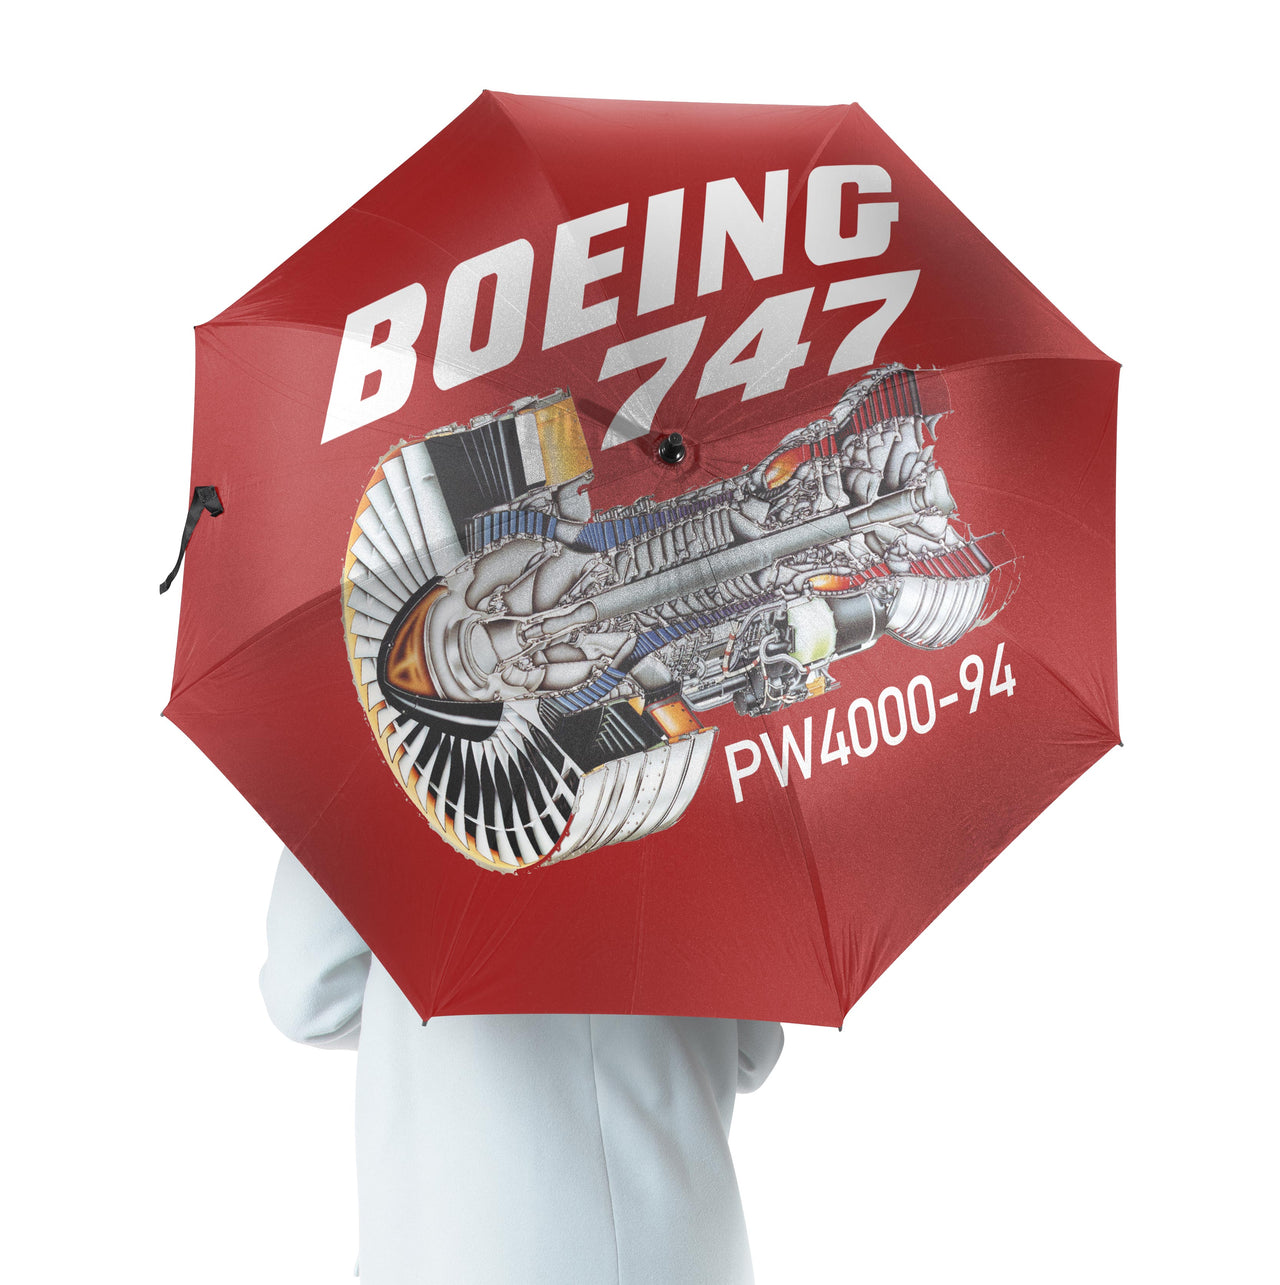 Boeing 747 & PW4000-94 Engine Designed Umbrella